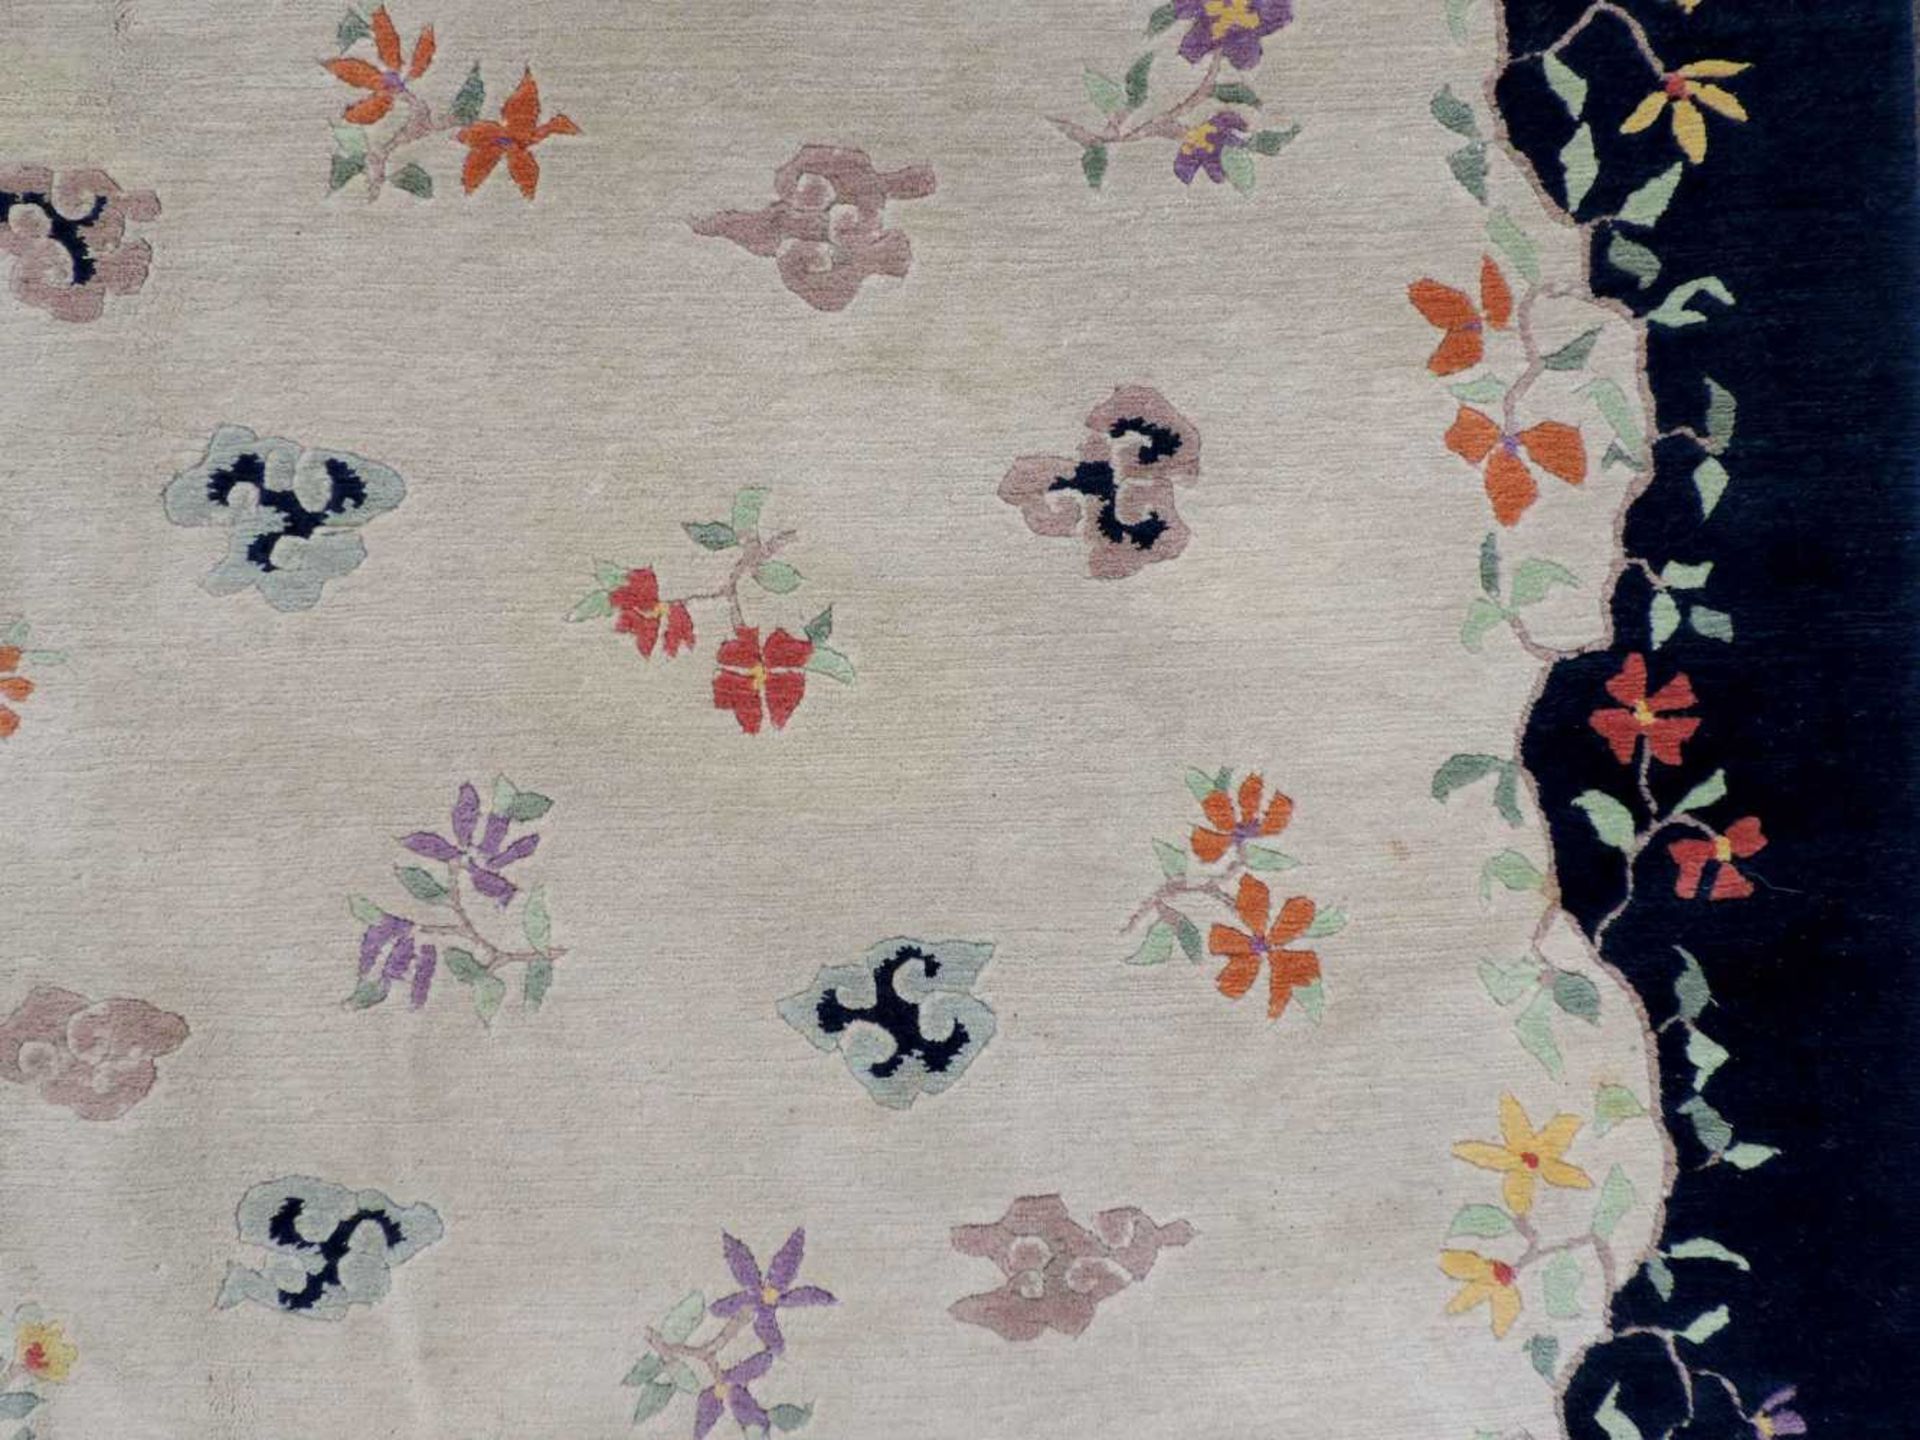 Blütenteppich China. 245 cm x 167 cm. Handgeknüpft, Wolle auf Baumwolle. Blossoms carpet China. - Bild 12 aus 12